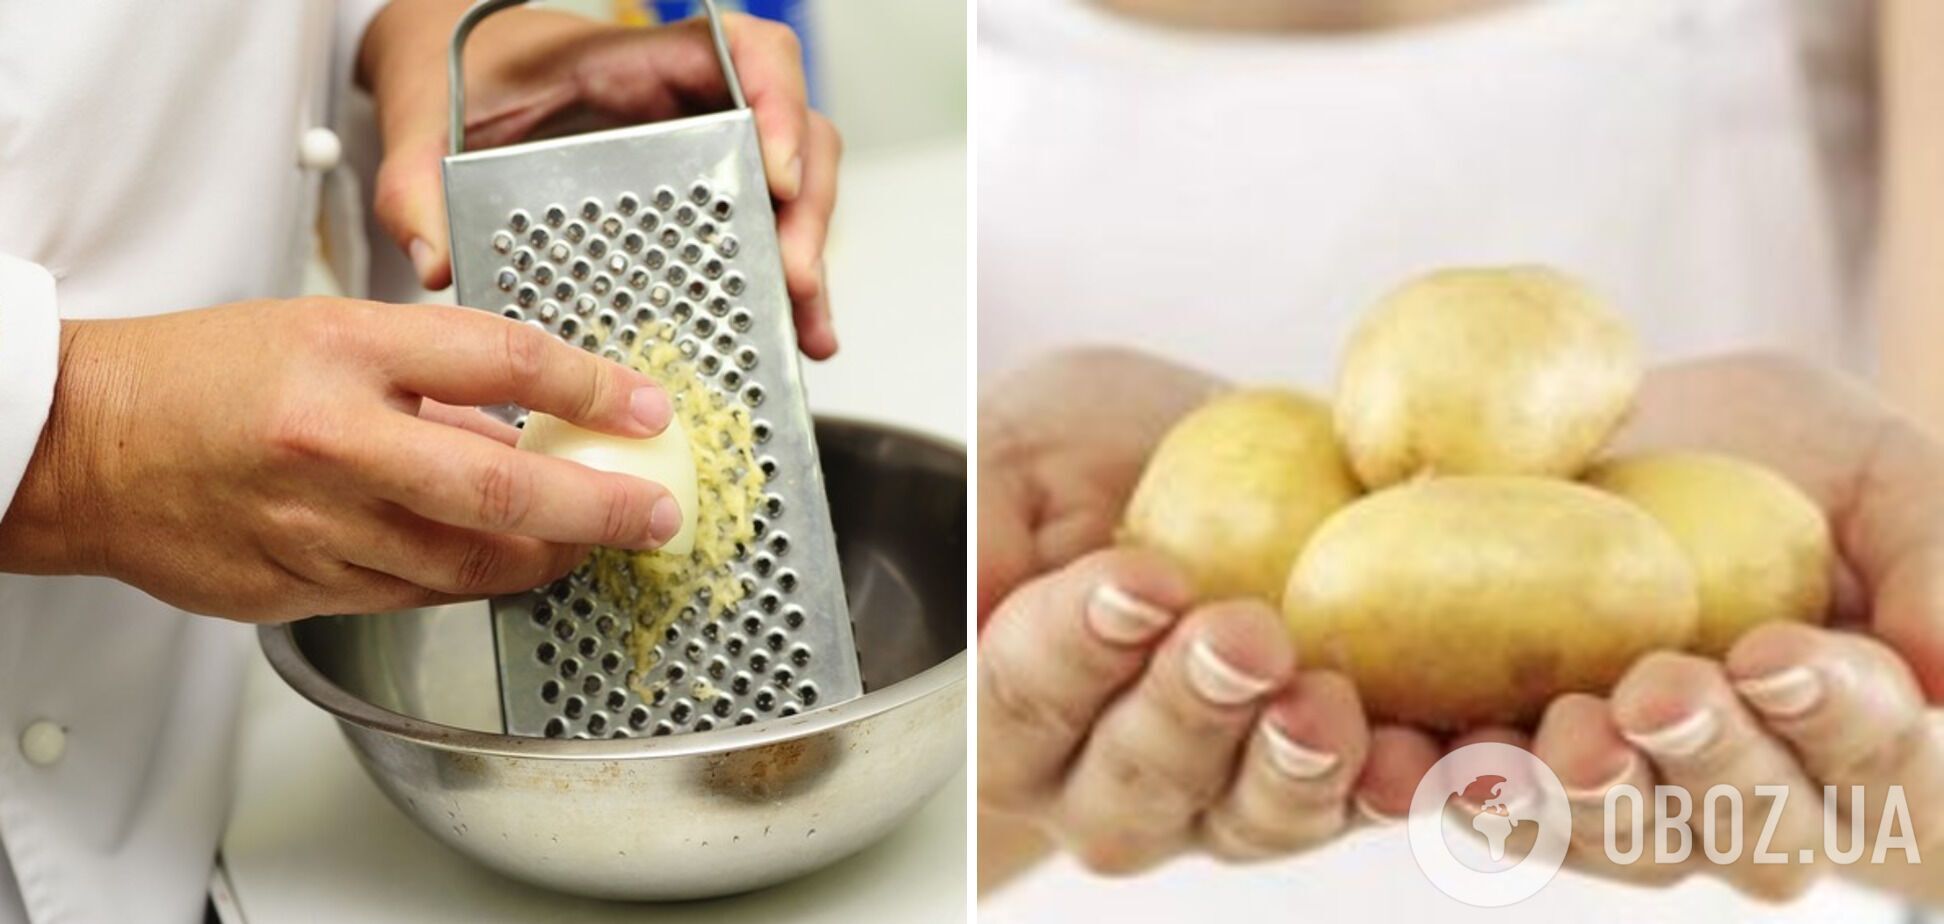 Натирання картоплі для страви